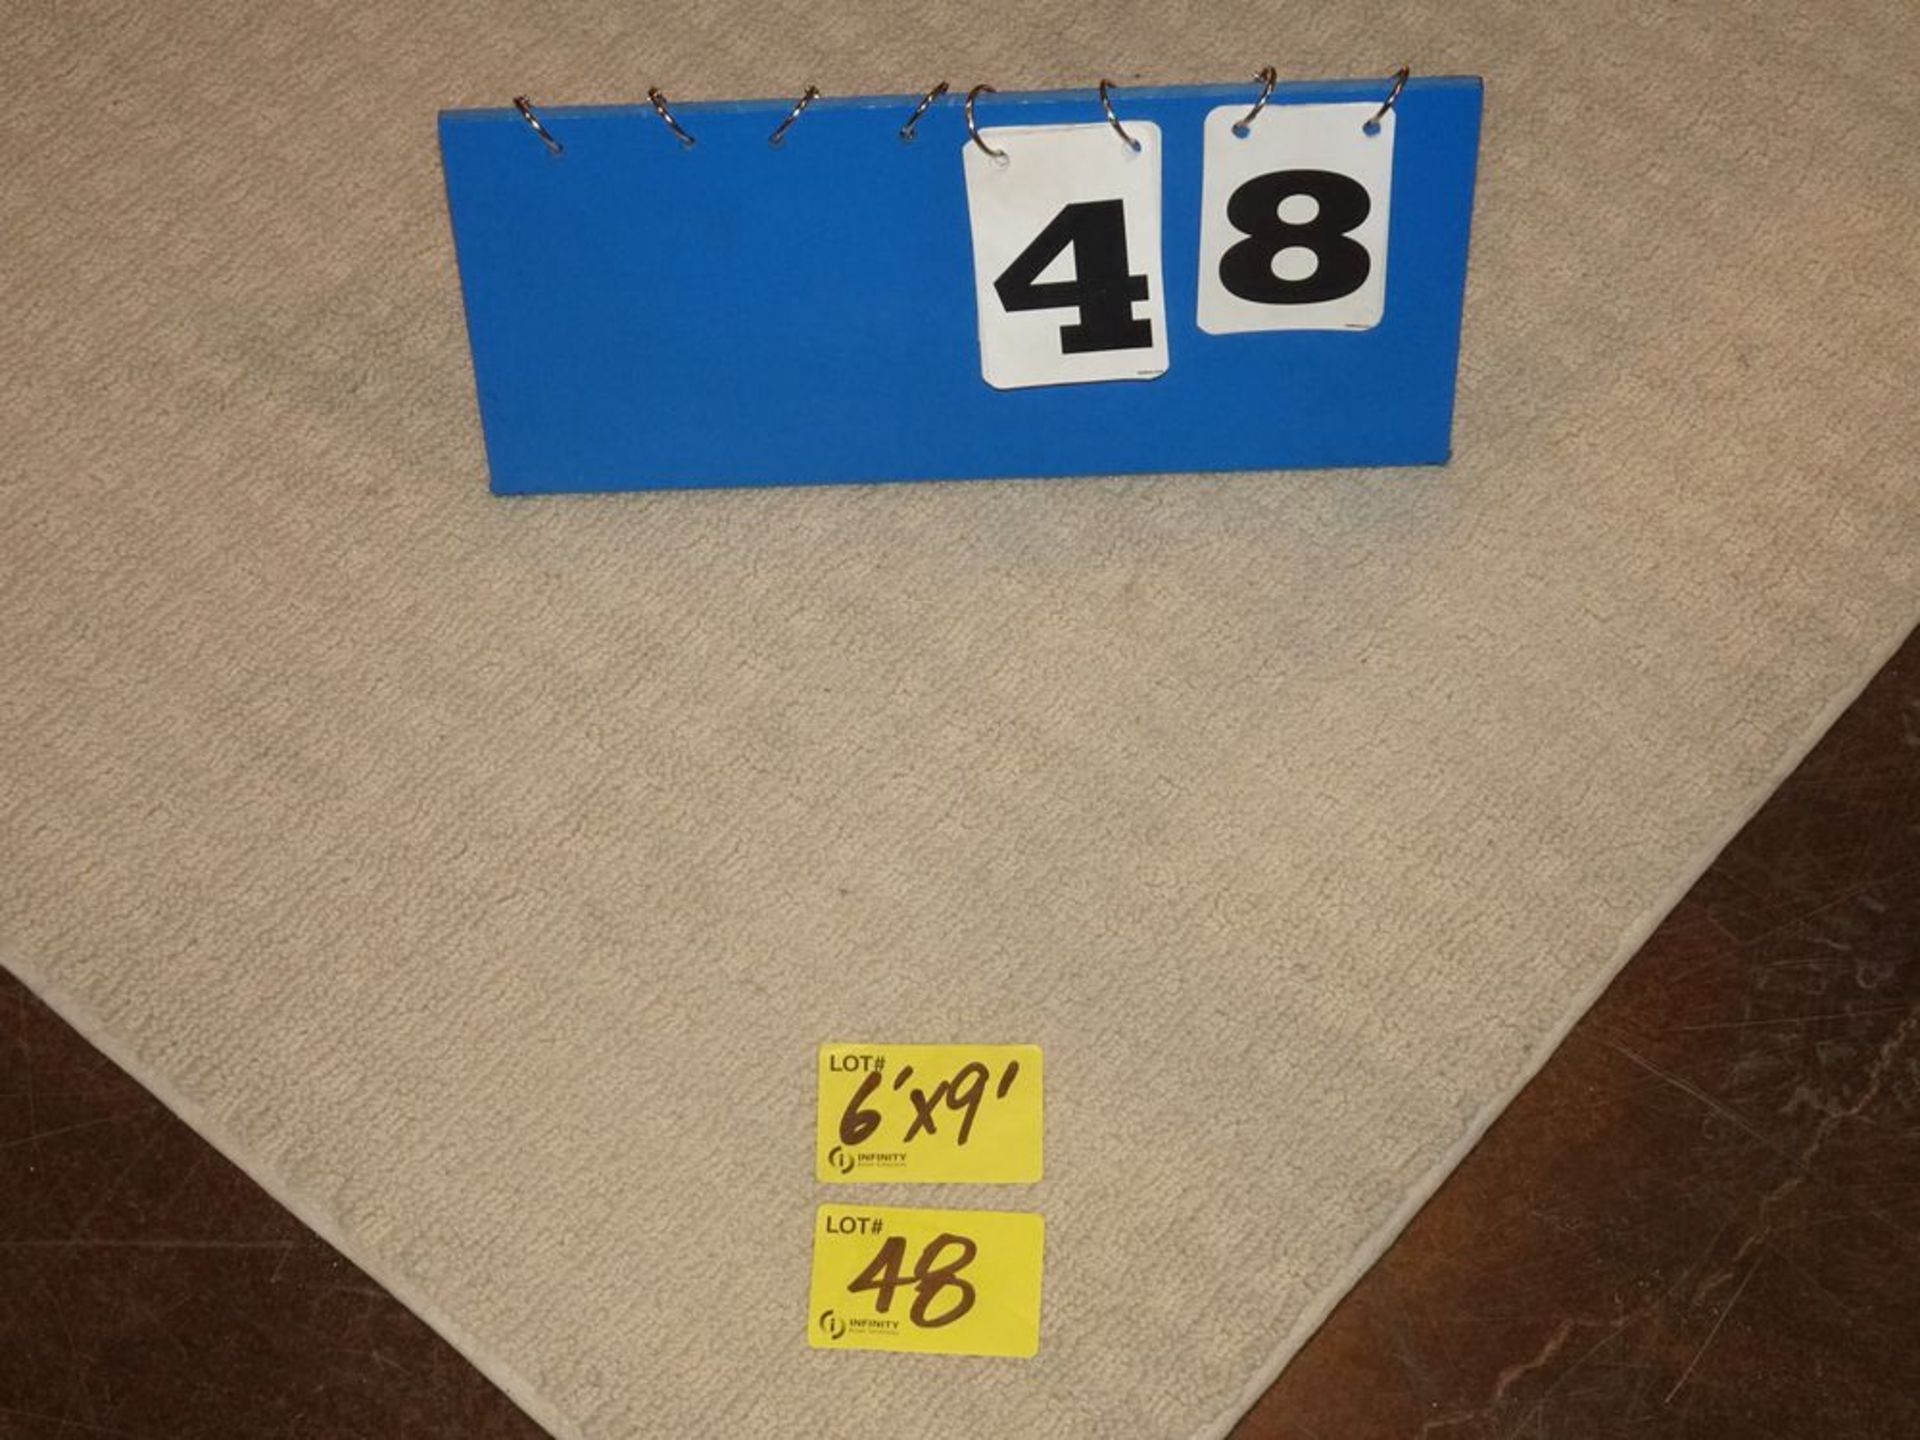 6' x 9' AREA RUG - BEIGE, FLOOR MODEL - Image 2 of 2